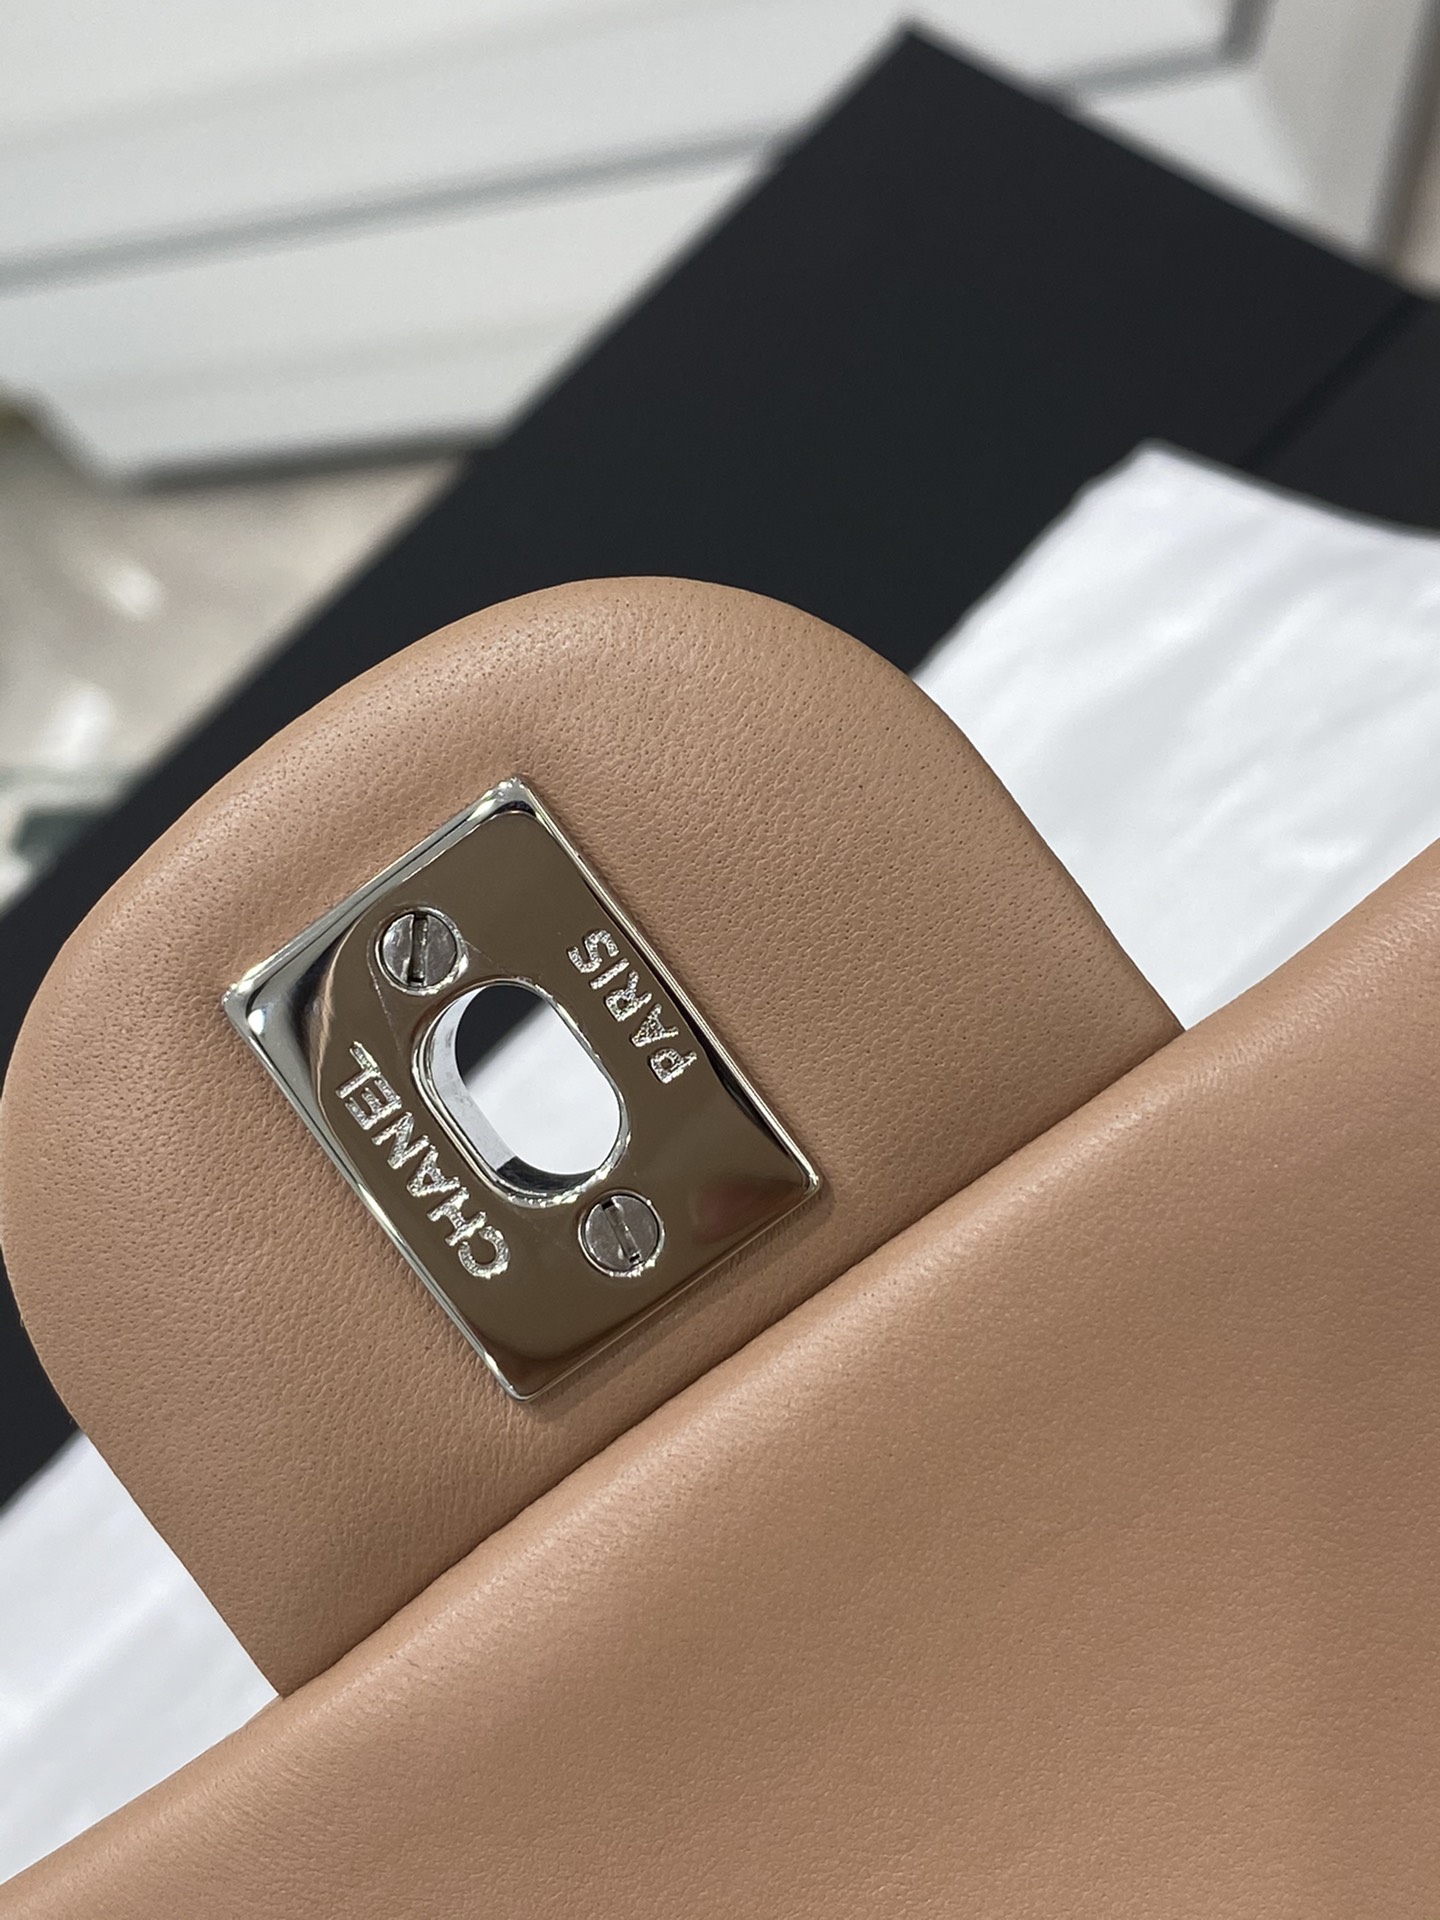 【真品级】Chanel CF 25  原厂bodin joyeux 羔羊皮  经典永远百搭 2022流行色 奶茶色 银扣